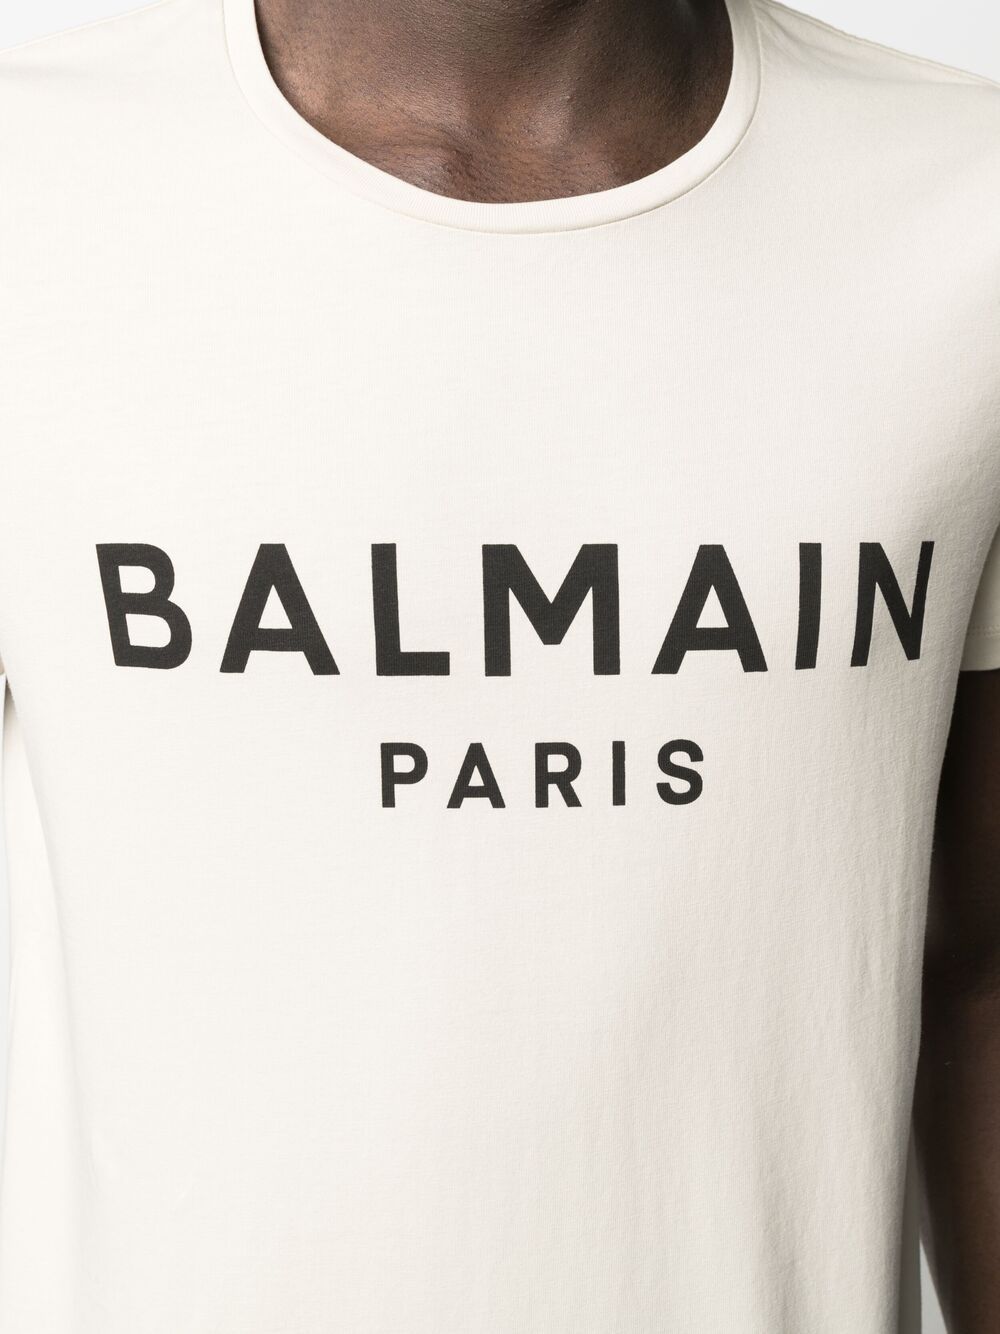 BALMAIN Logo T-Shirt Ivory - MAISONDEFASHION.COM